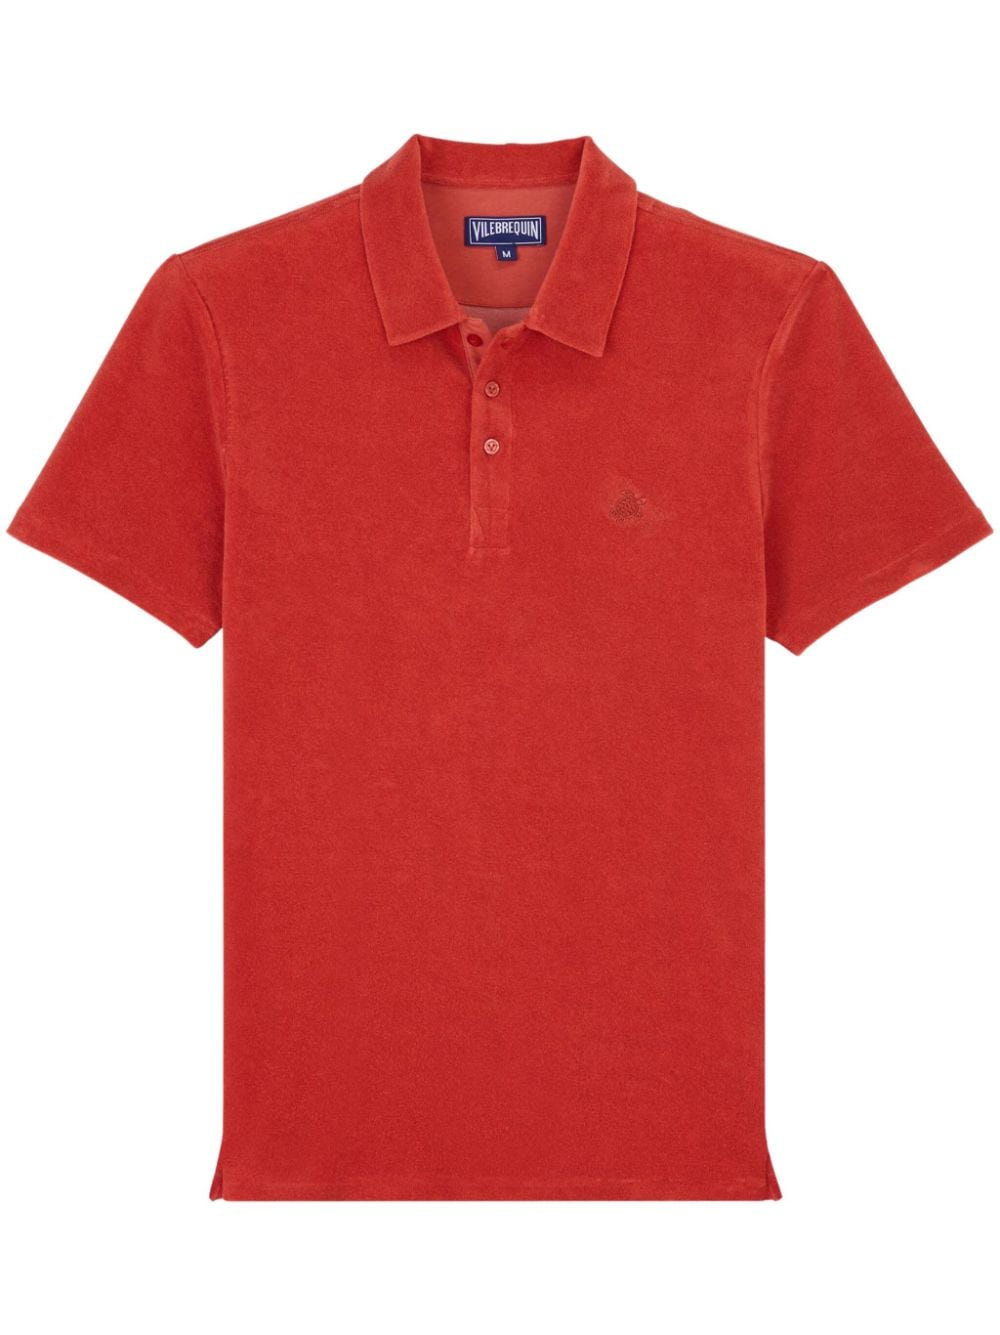 Vilebrequin terry-cloth polo shirt - Red von Vilebrequin